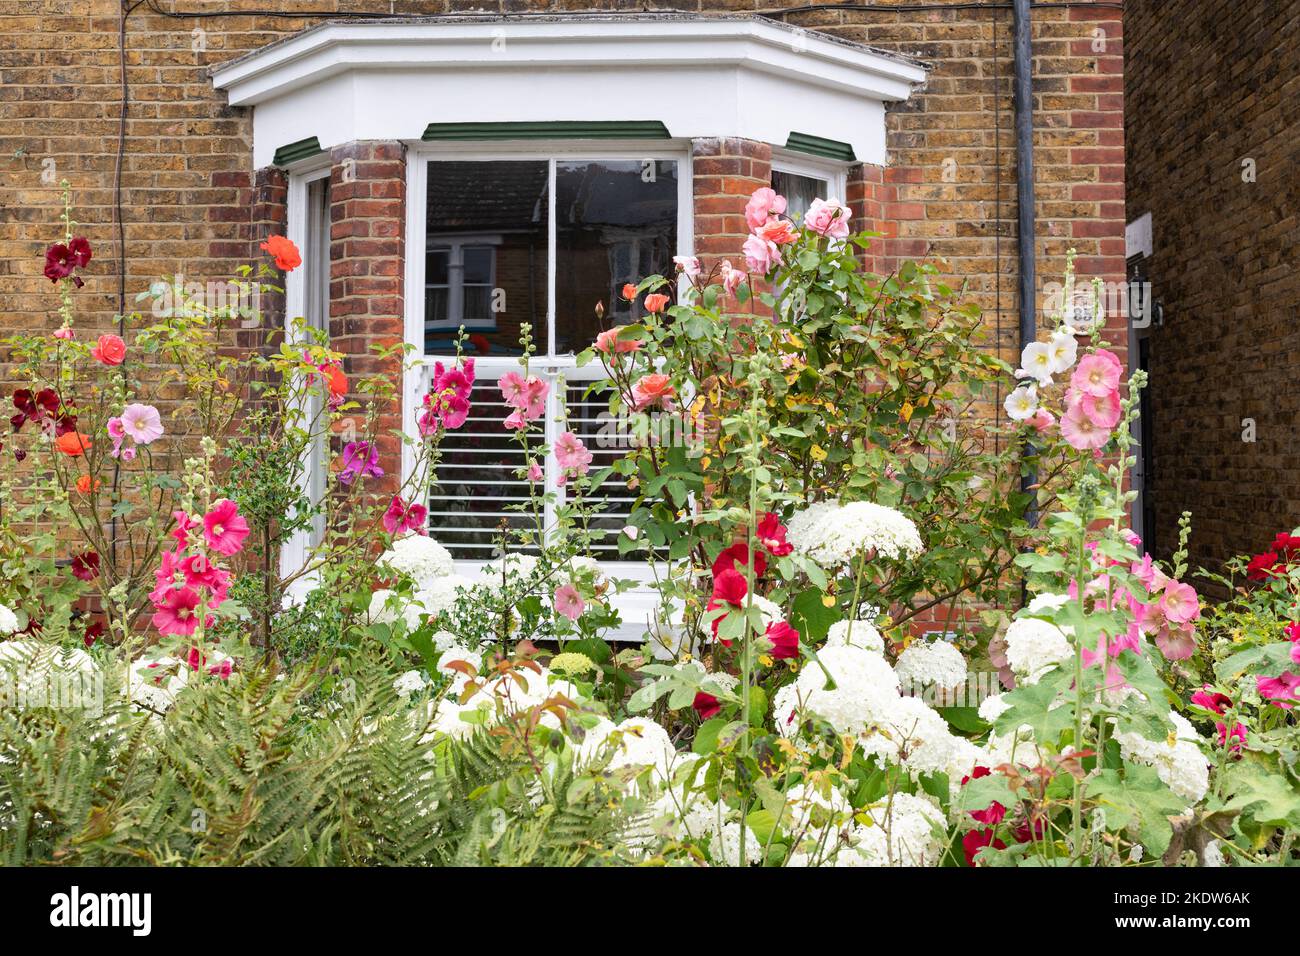 Piccolo giardino di fronte pieno di fiori colorati tra cui rose, hollyhocks e ortensie a Faversham, Kent, Inghilterra, Regno Unito Foto Stock